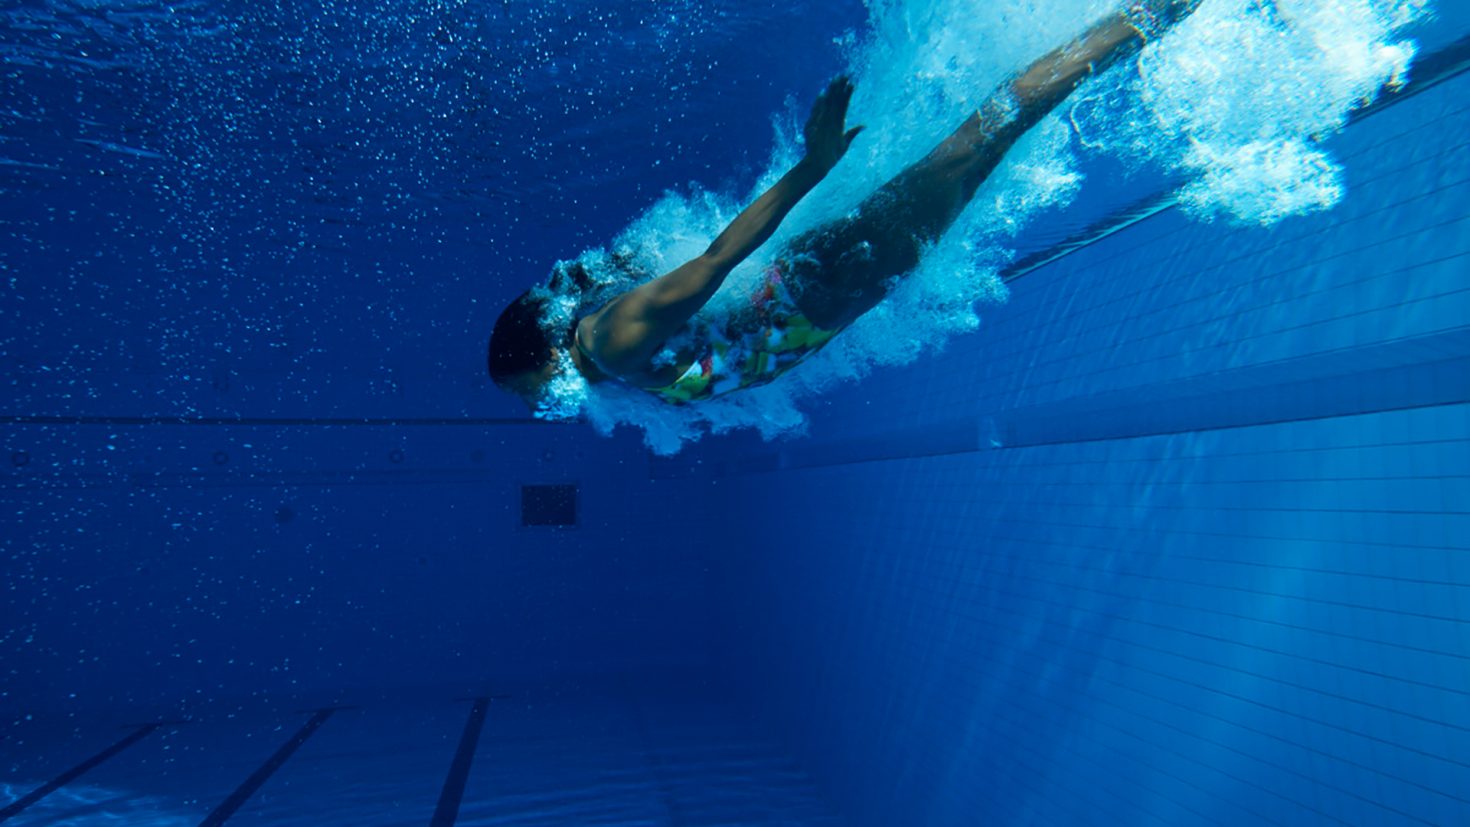 Underwater swimmer